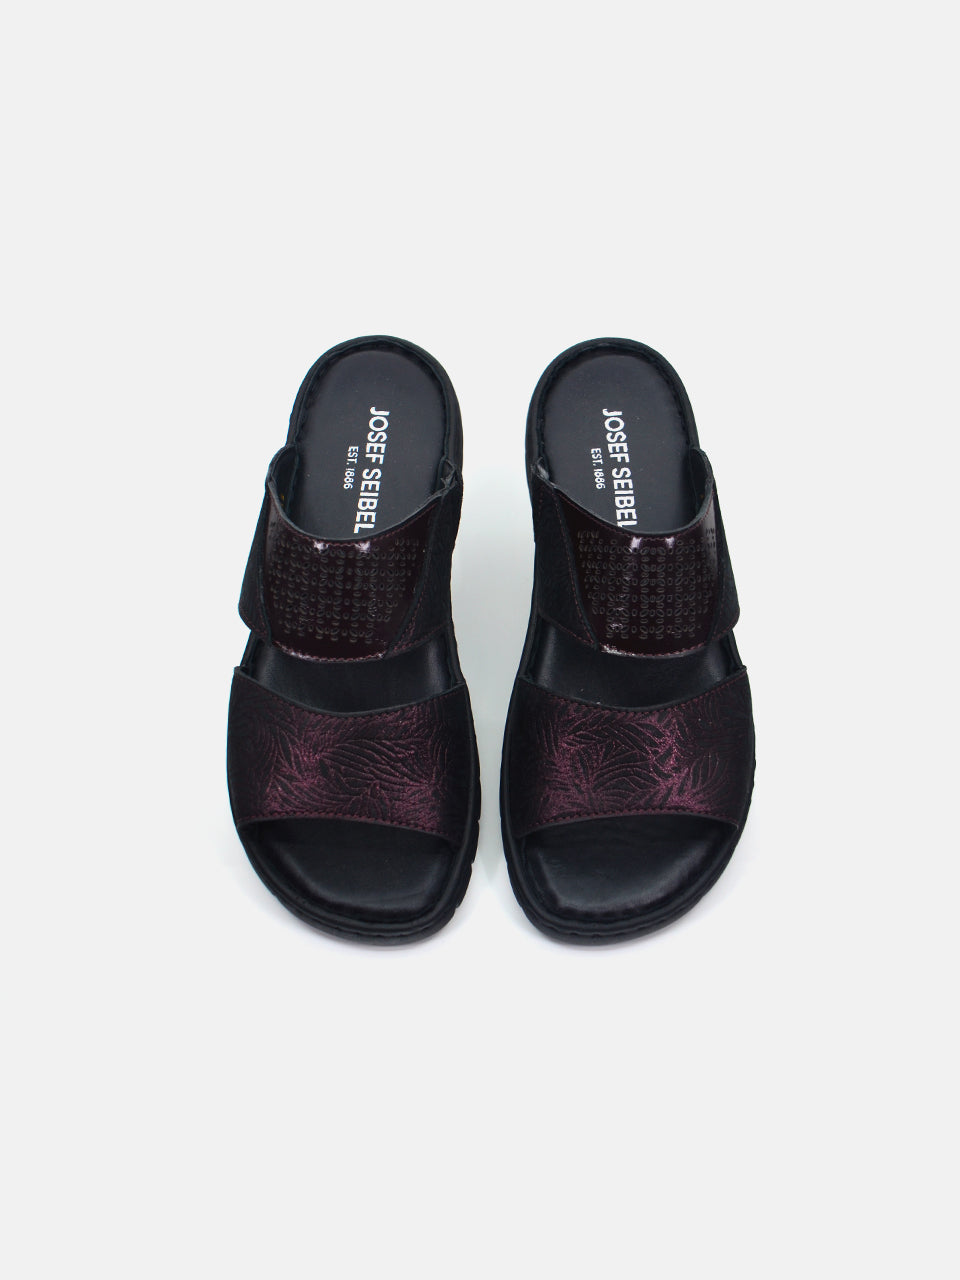 Josef Seibel Women's Slider Sandals #color_Maroon